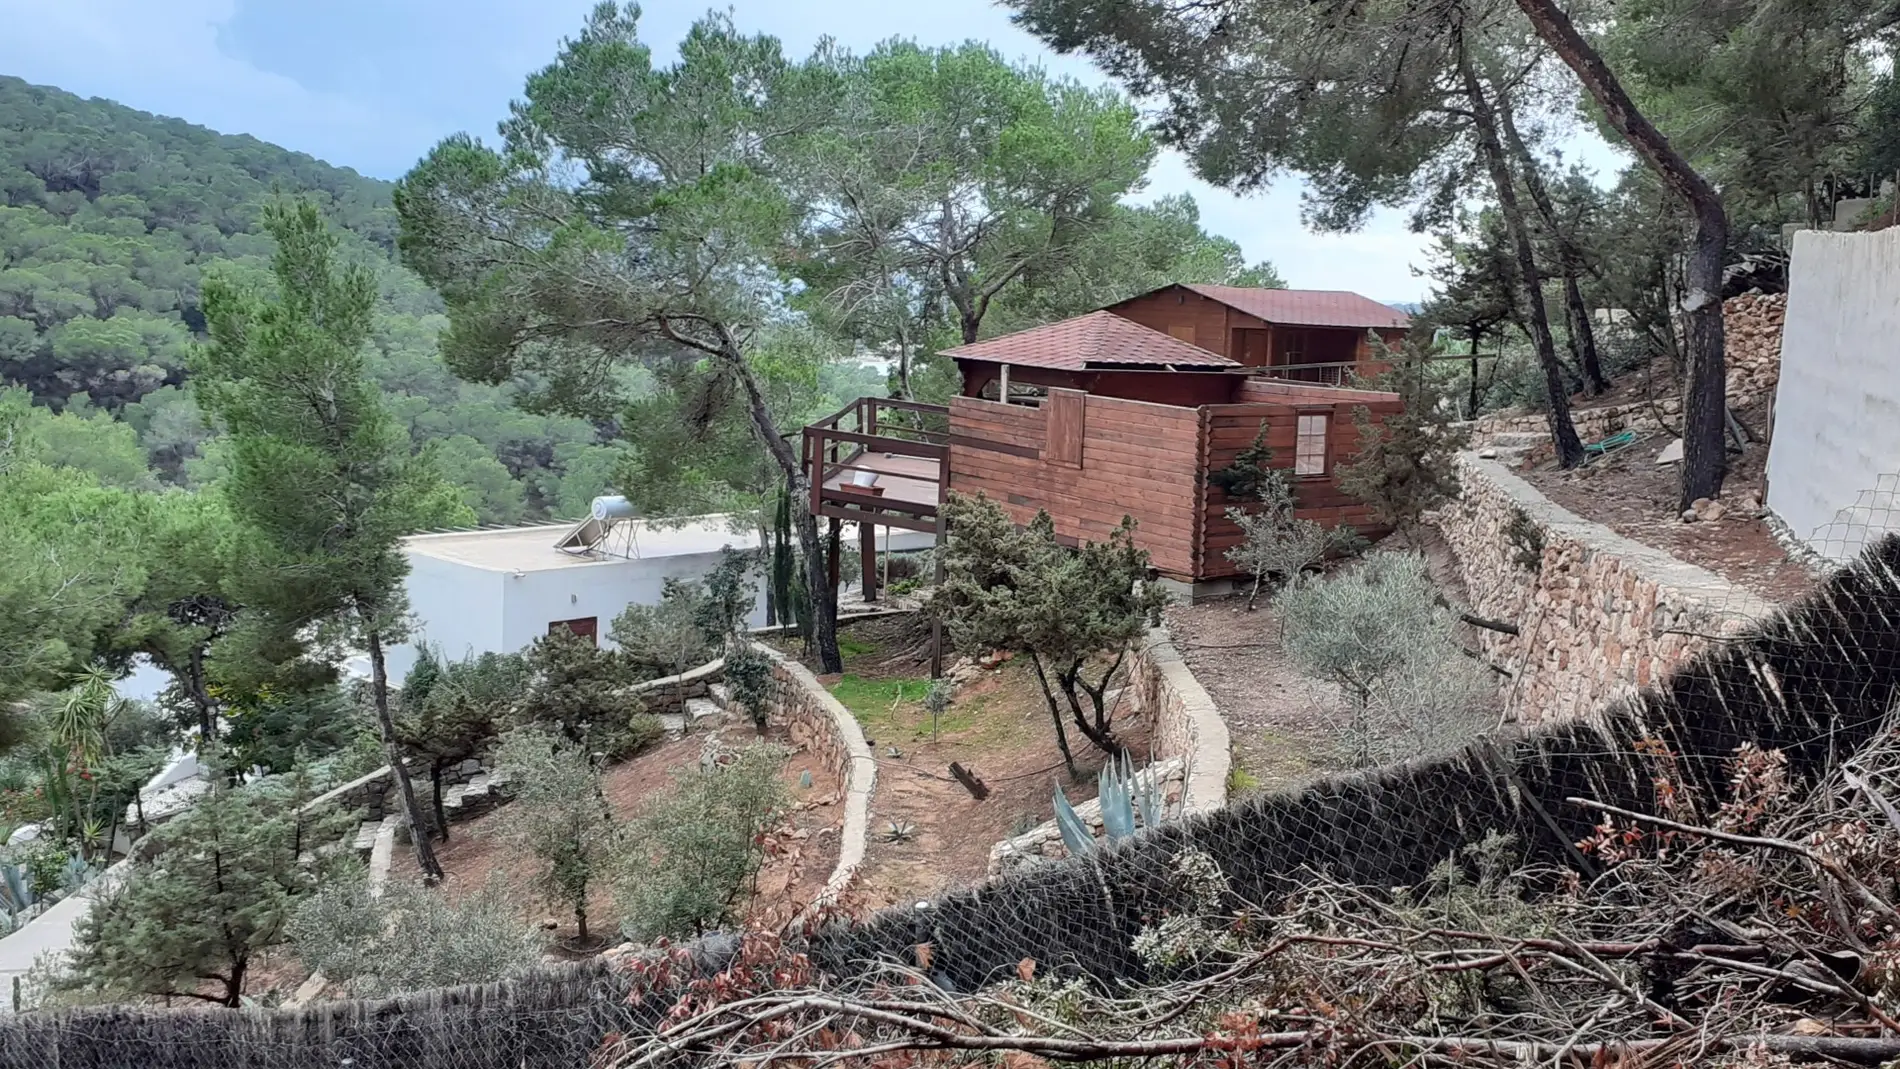 El Consell de Ibiza ordena demoler dos viviendas de madera en Ses Salines y les impone una multa de 270.000 euros